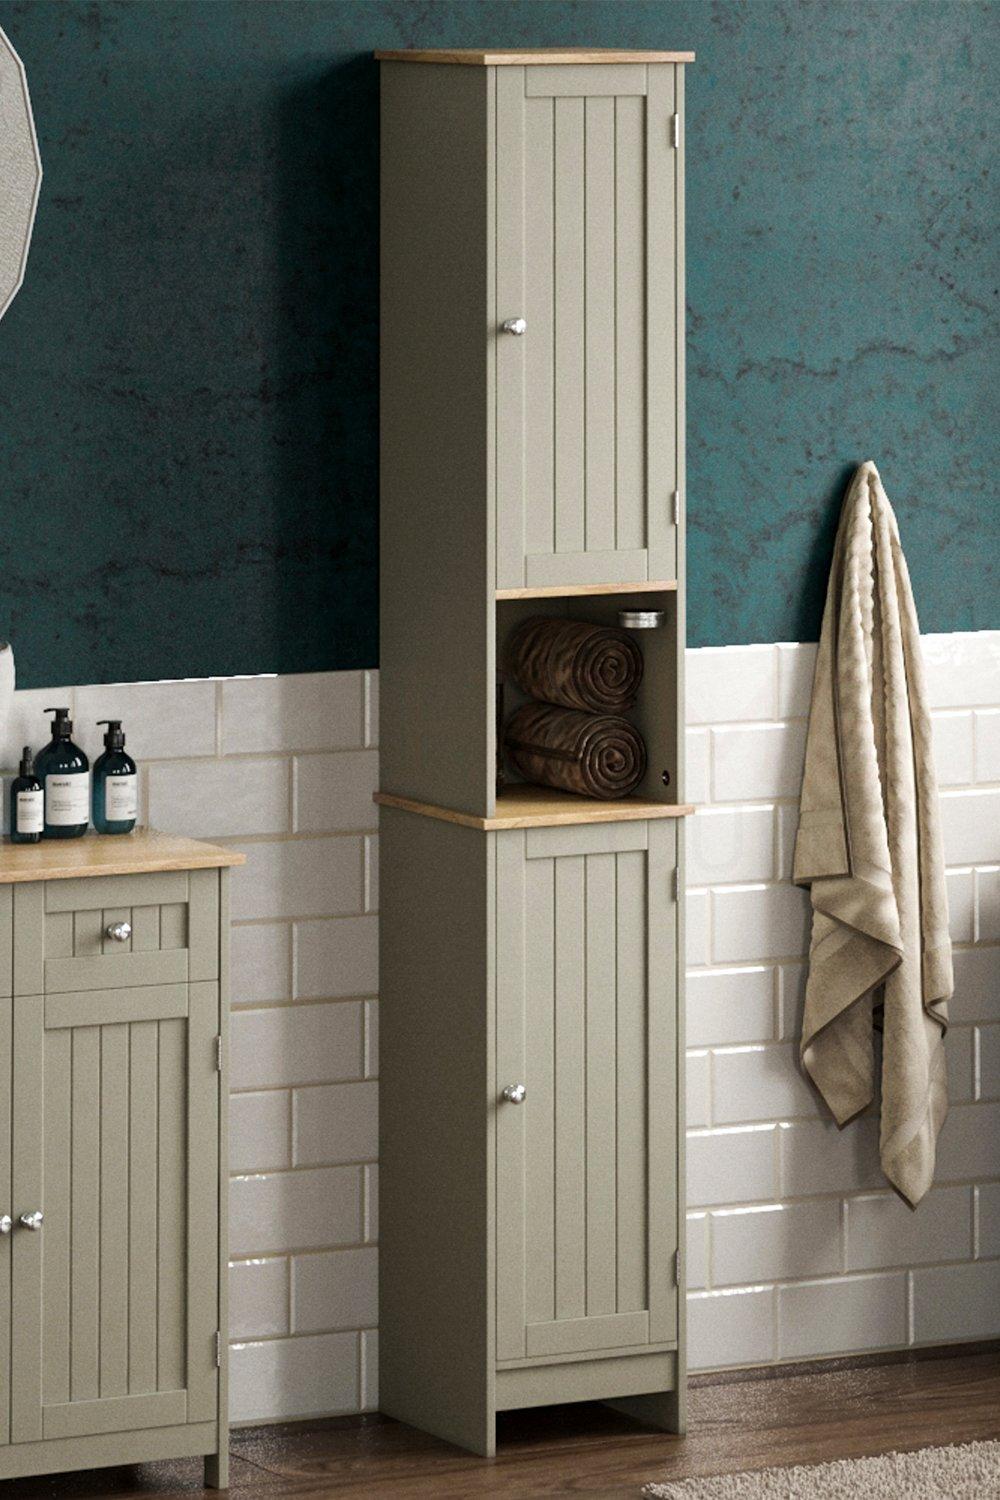 Bath Vida Priano 2 Door Tall Cabinet Cupboard Bathroom Storage 1700 x 320 x 300 mm